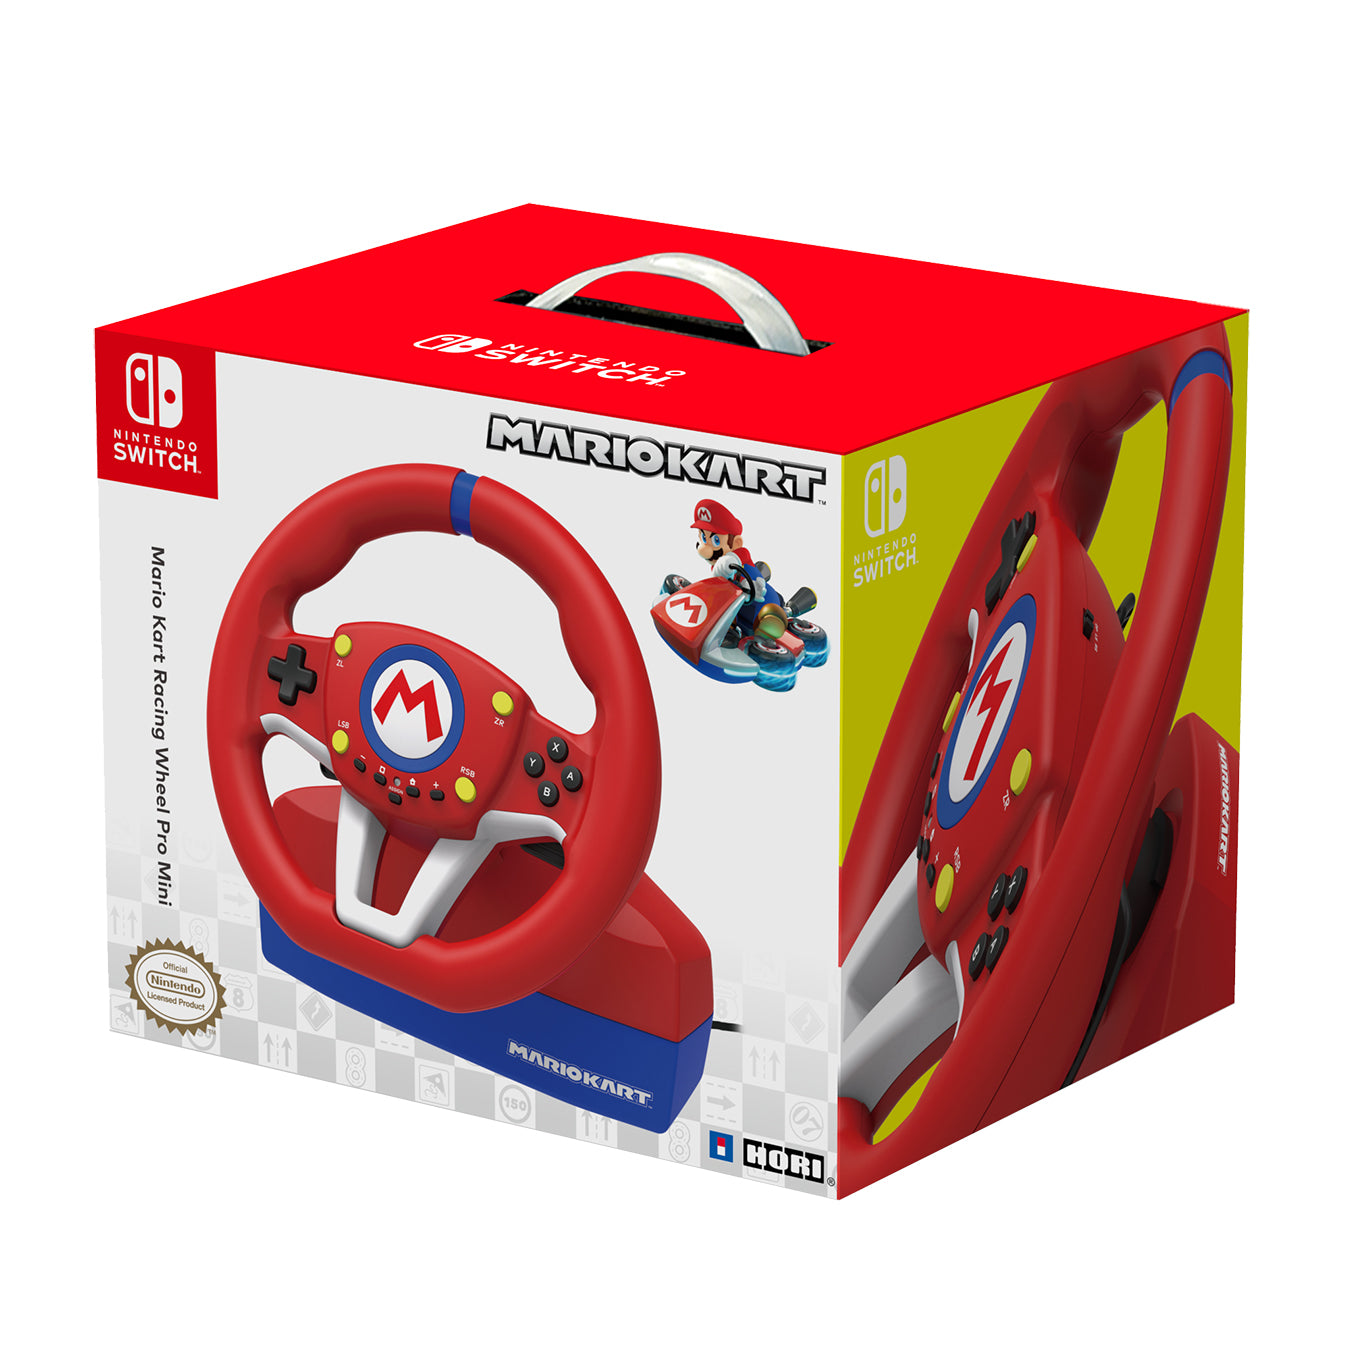 Pro Mario Kart Wheel